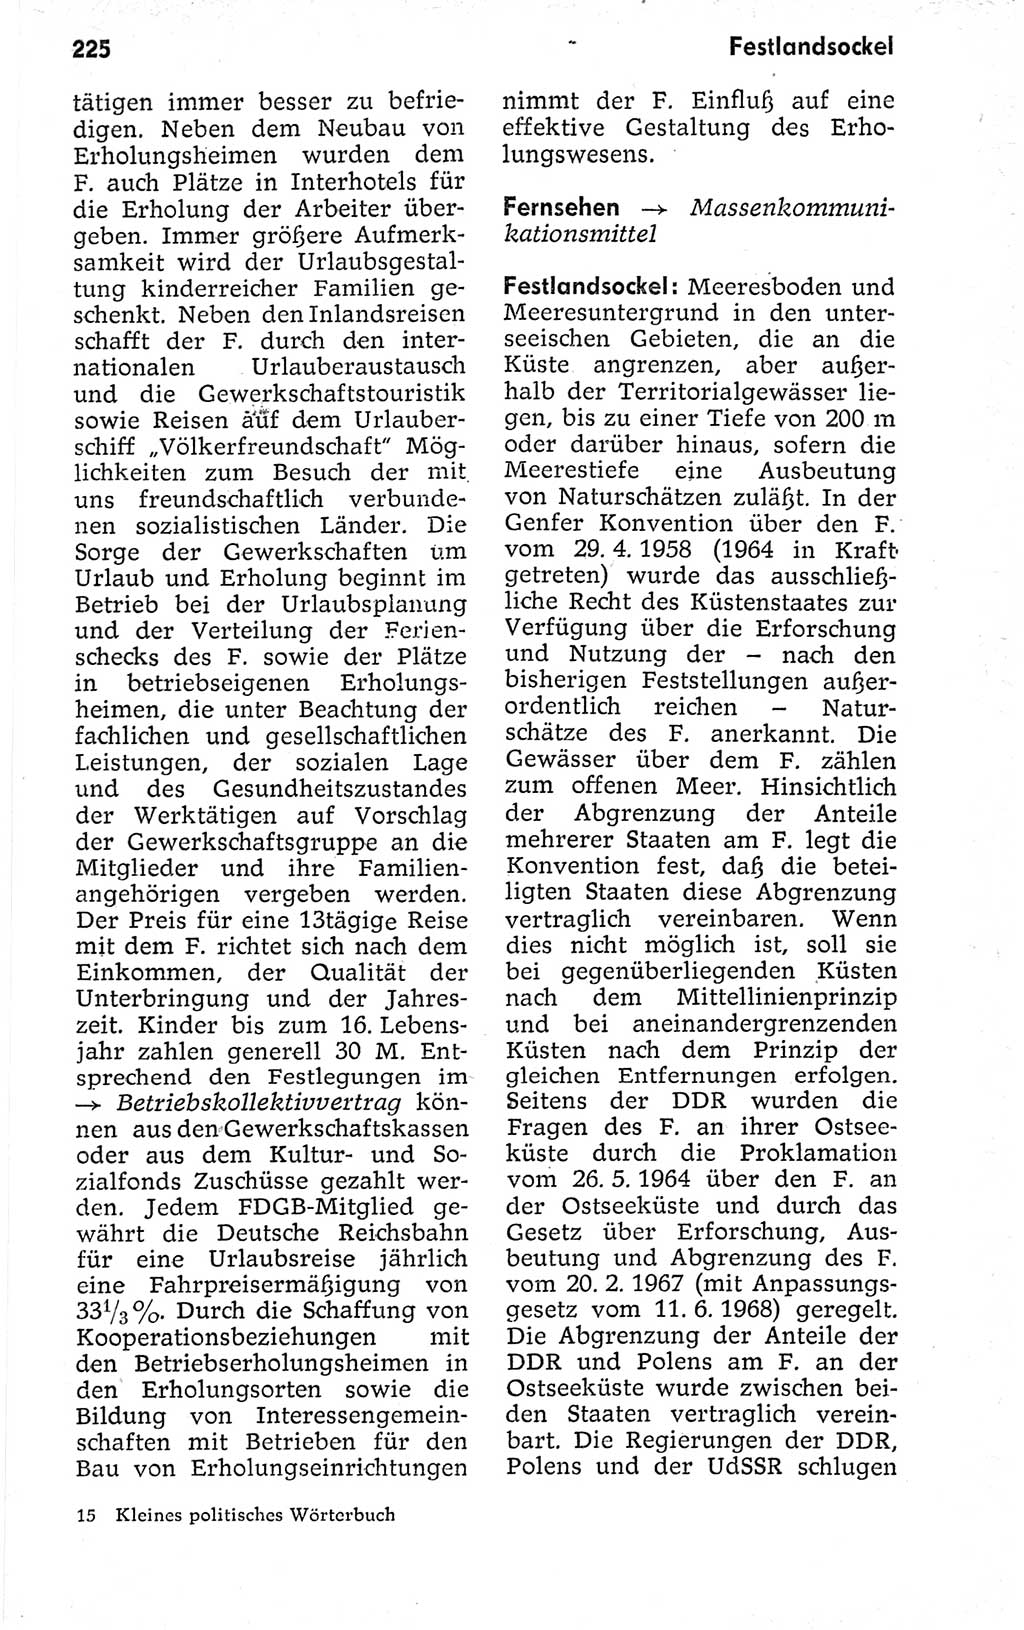 Kleines politisches Wörterbuch [Deutsche Demokratische Republik (DDR)] 1973, Seite 225 (Kl. pol. Wb. DDR 1973, S. 225)